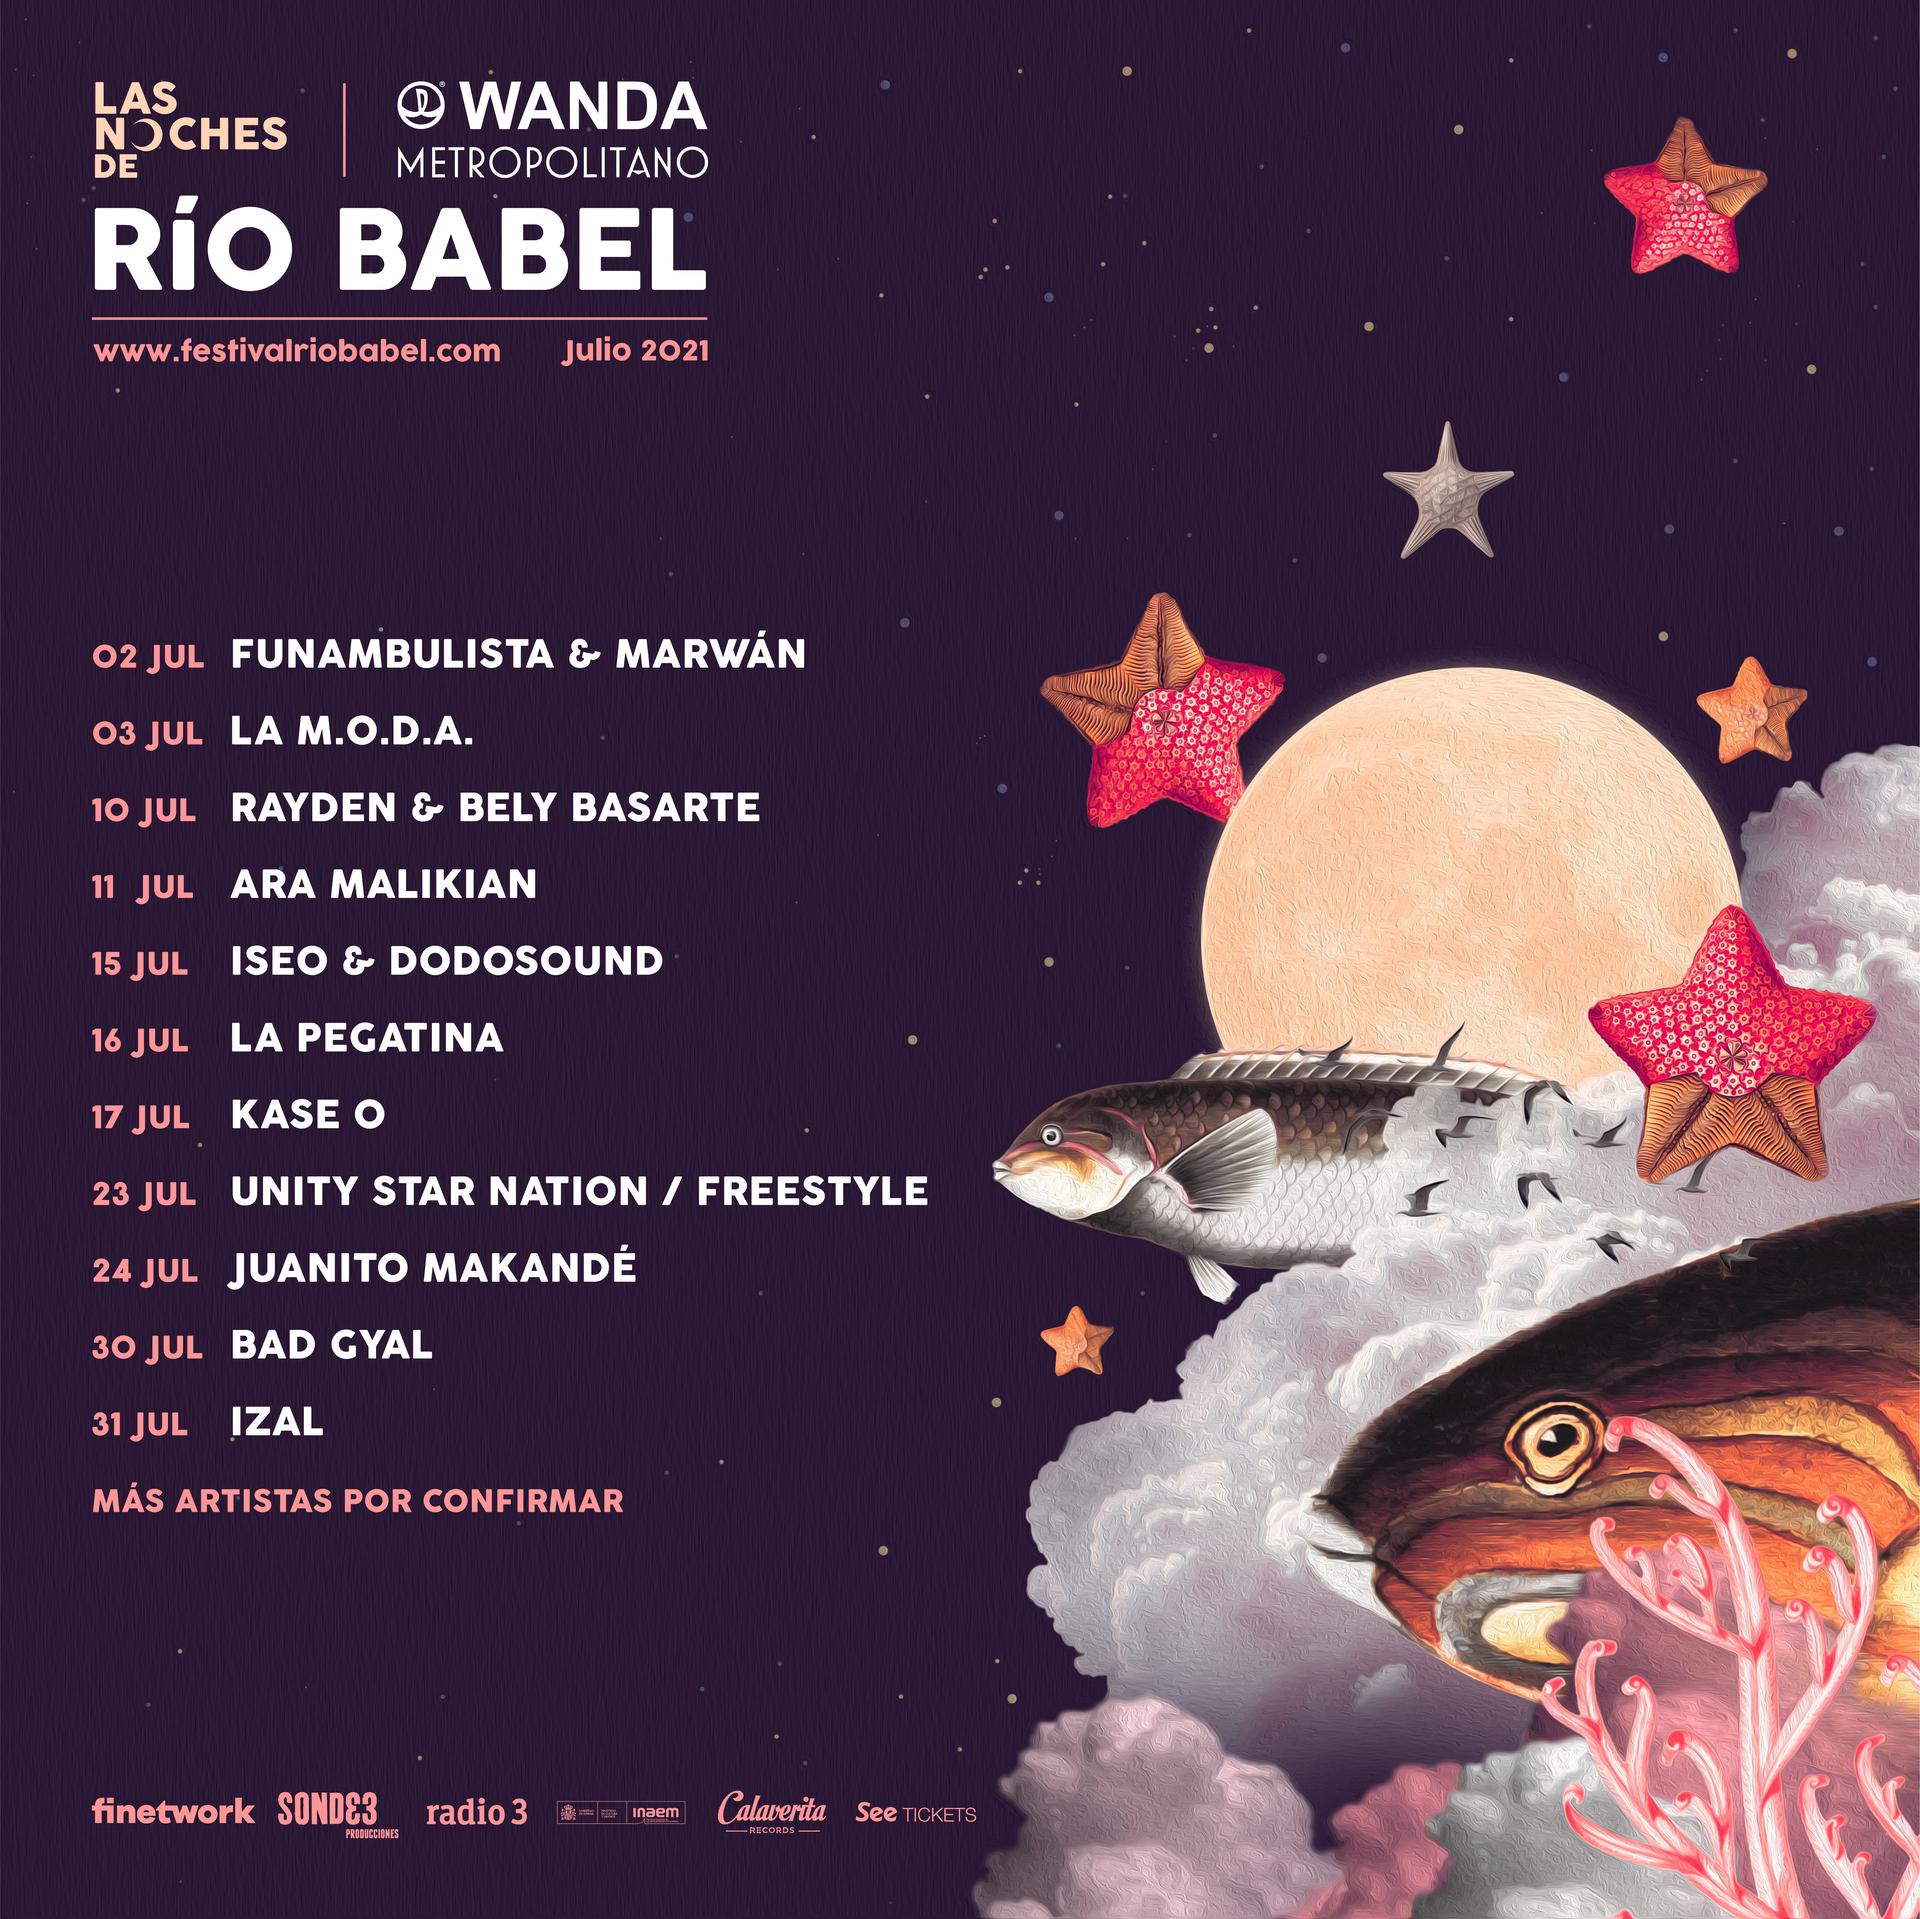 Las Noches de Río Babel se celebrarán este año en el Wanda Metropolitano